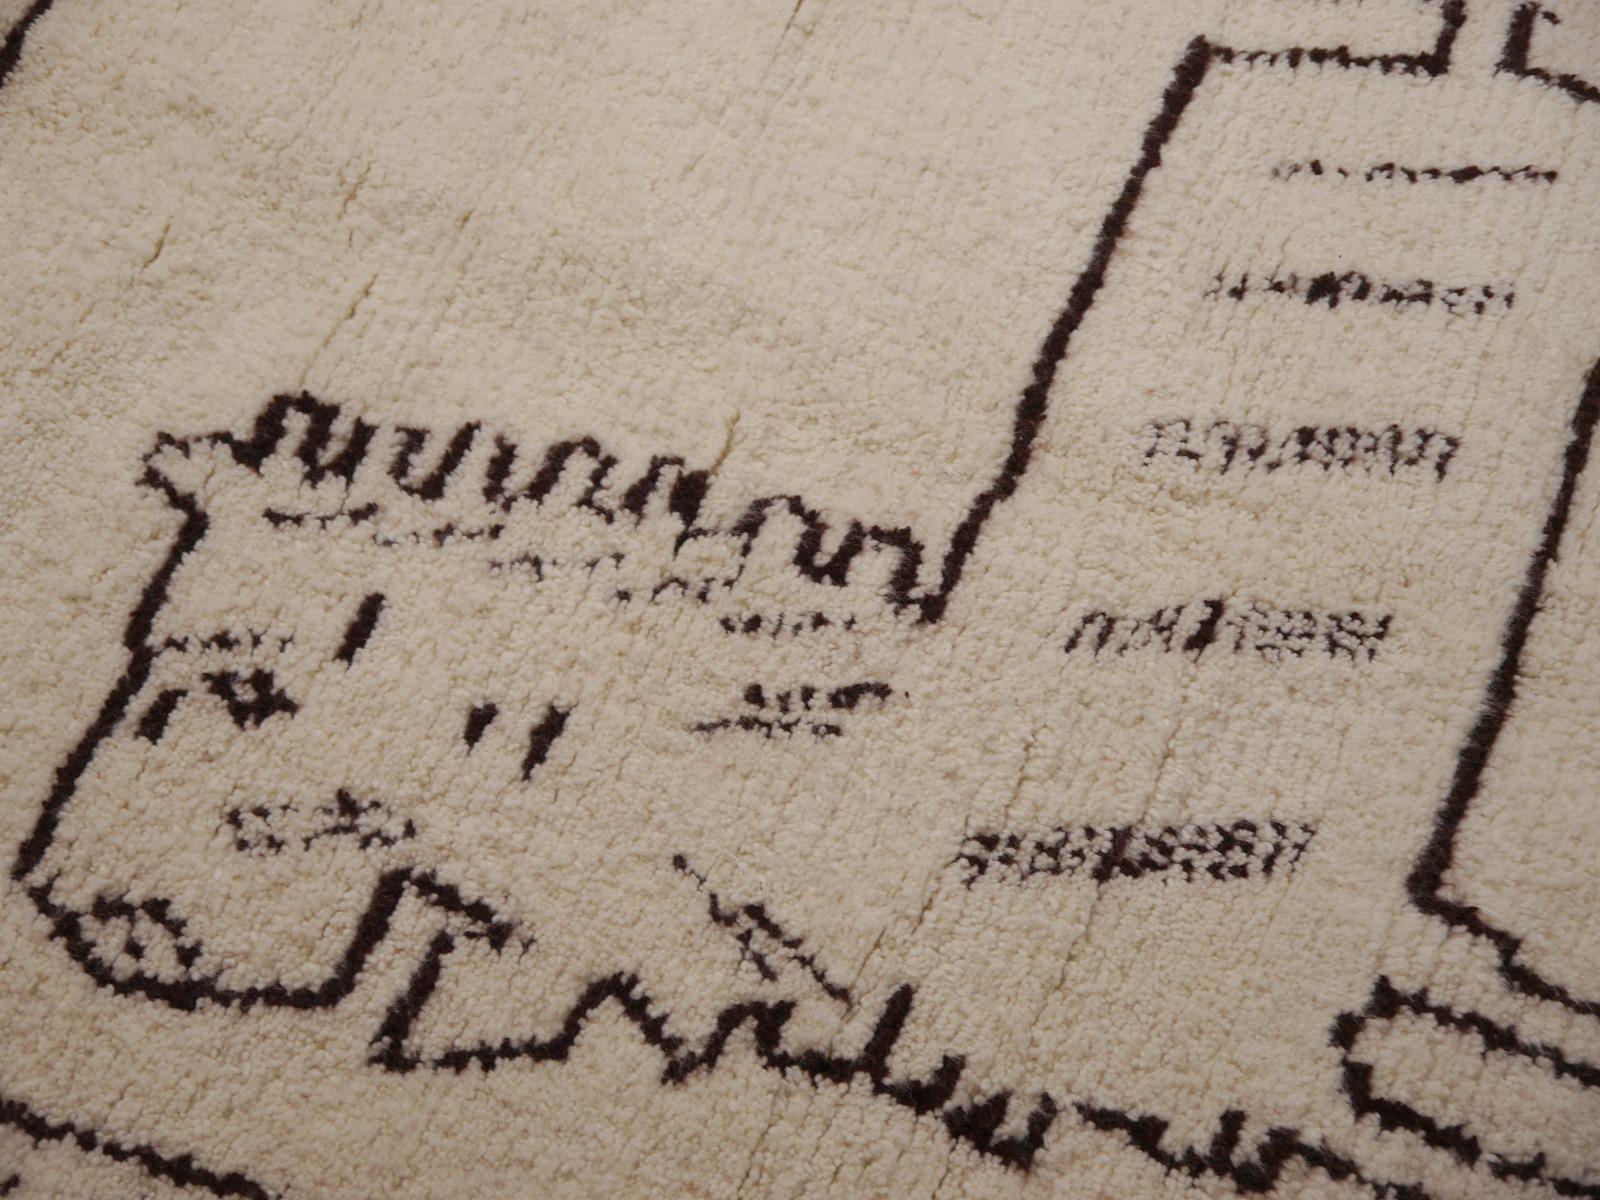 Ein Löwen-Berberteppich aus Marokko 

Dieser Teppich wurde von Frauen des Beni Ourain-Stammes im Atlasgebirge in Marokko handgeknüpft. Er hat wunderbar weiche Wolle und einen mittelhohen Flor. Es ist neu, unbenutzt und in ausgezeichnetem